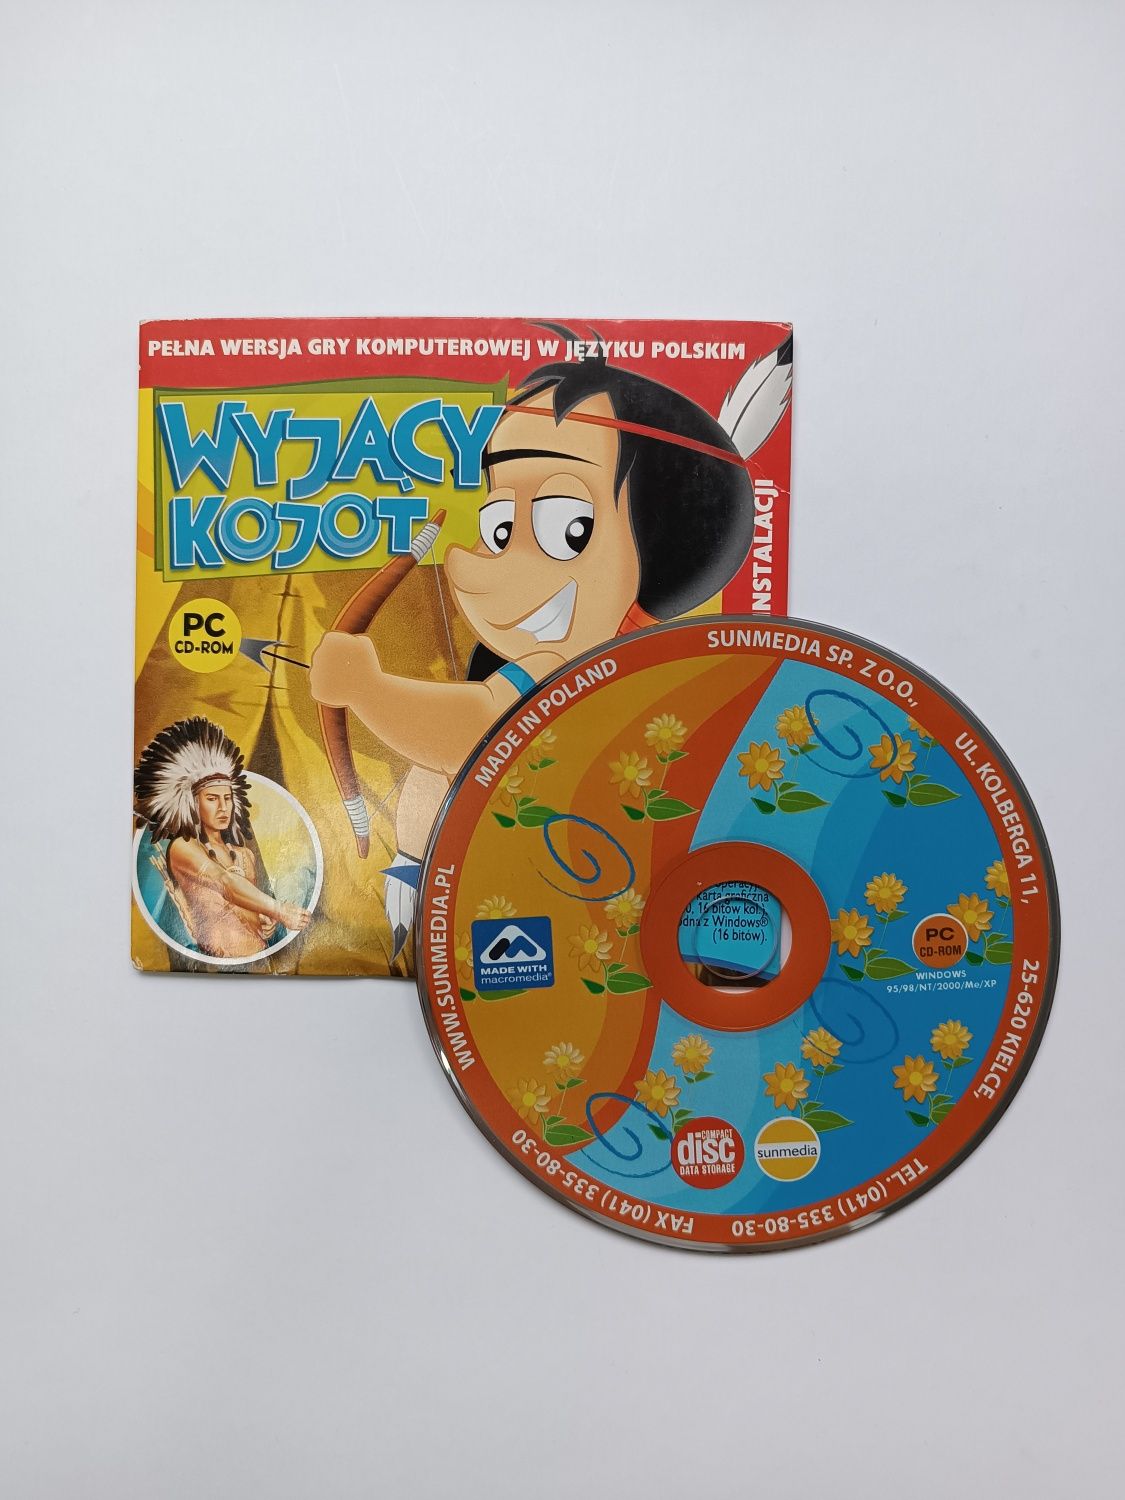 Gra komputerowa dla dzieci - wyjący kojot - płyta CD